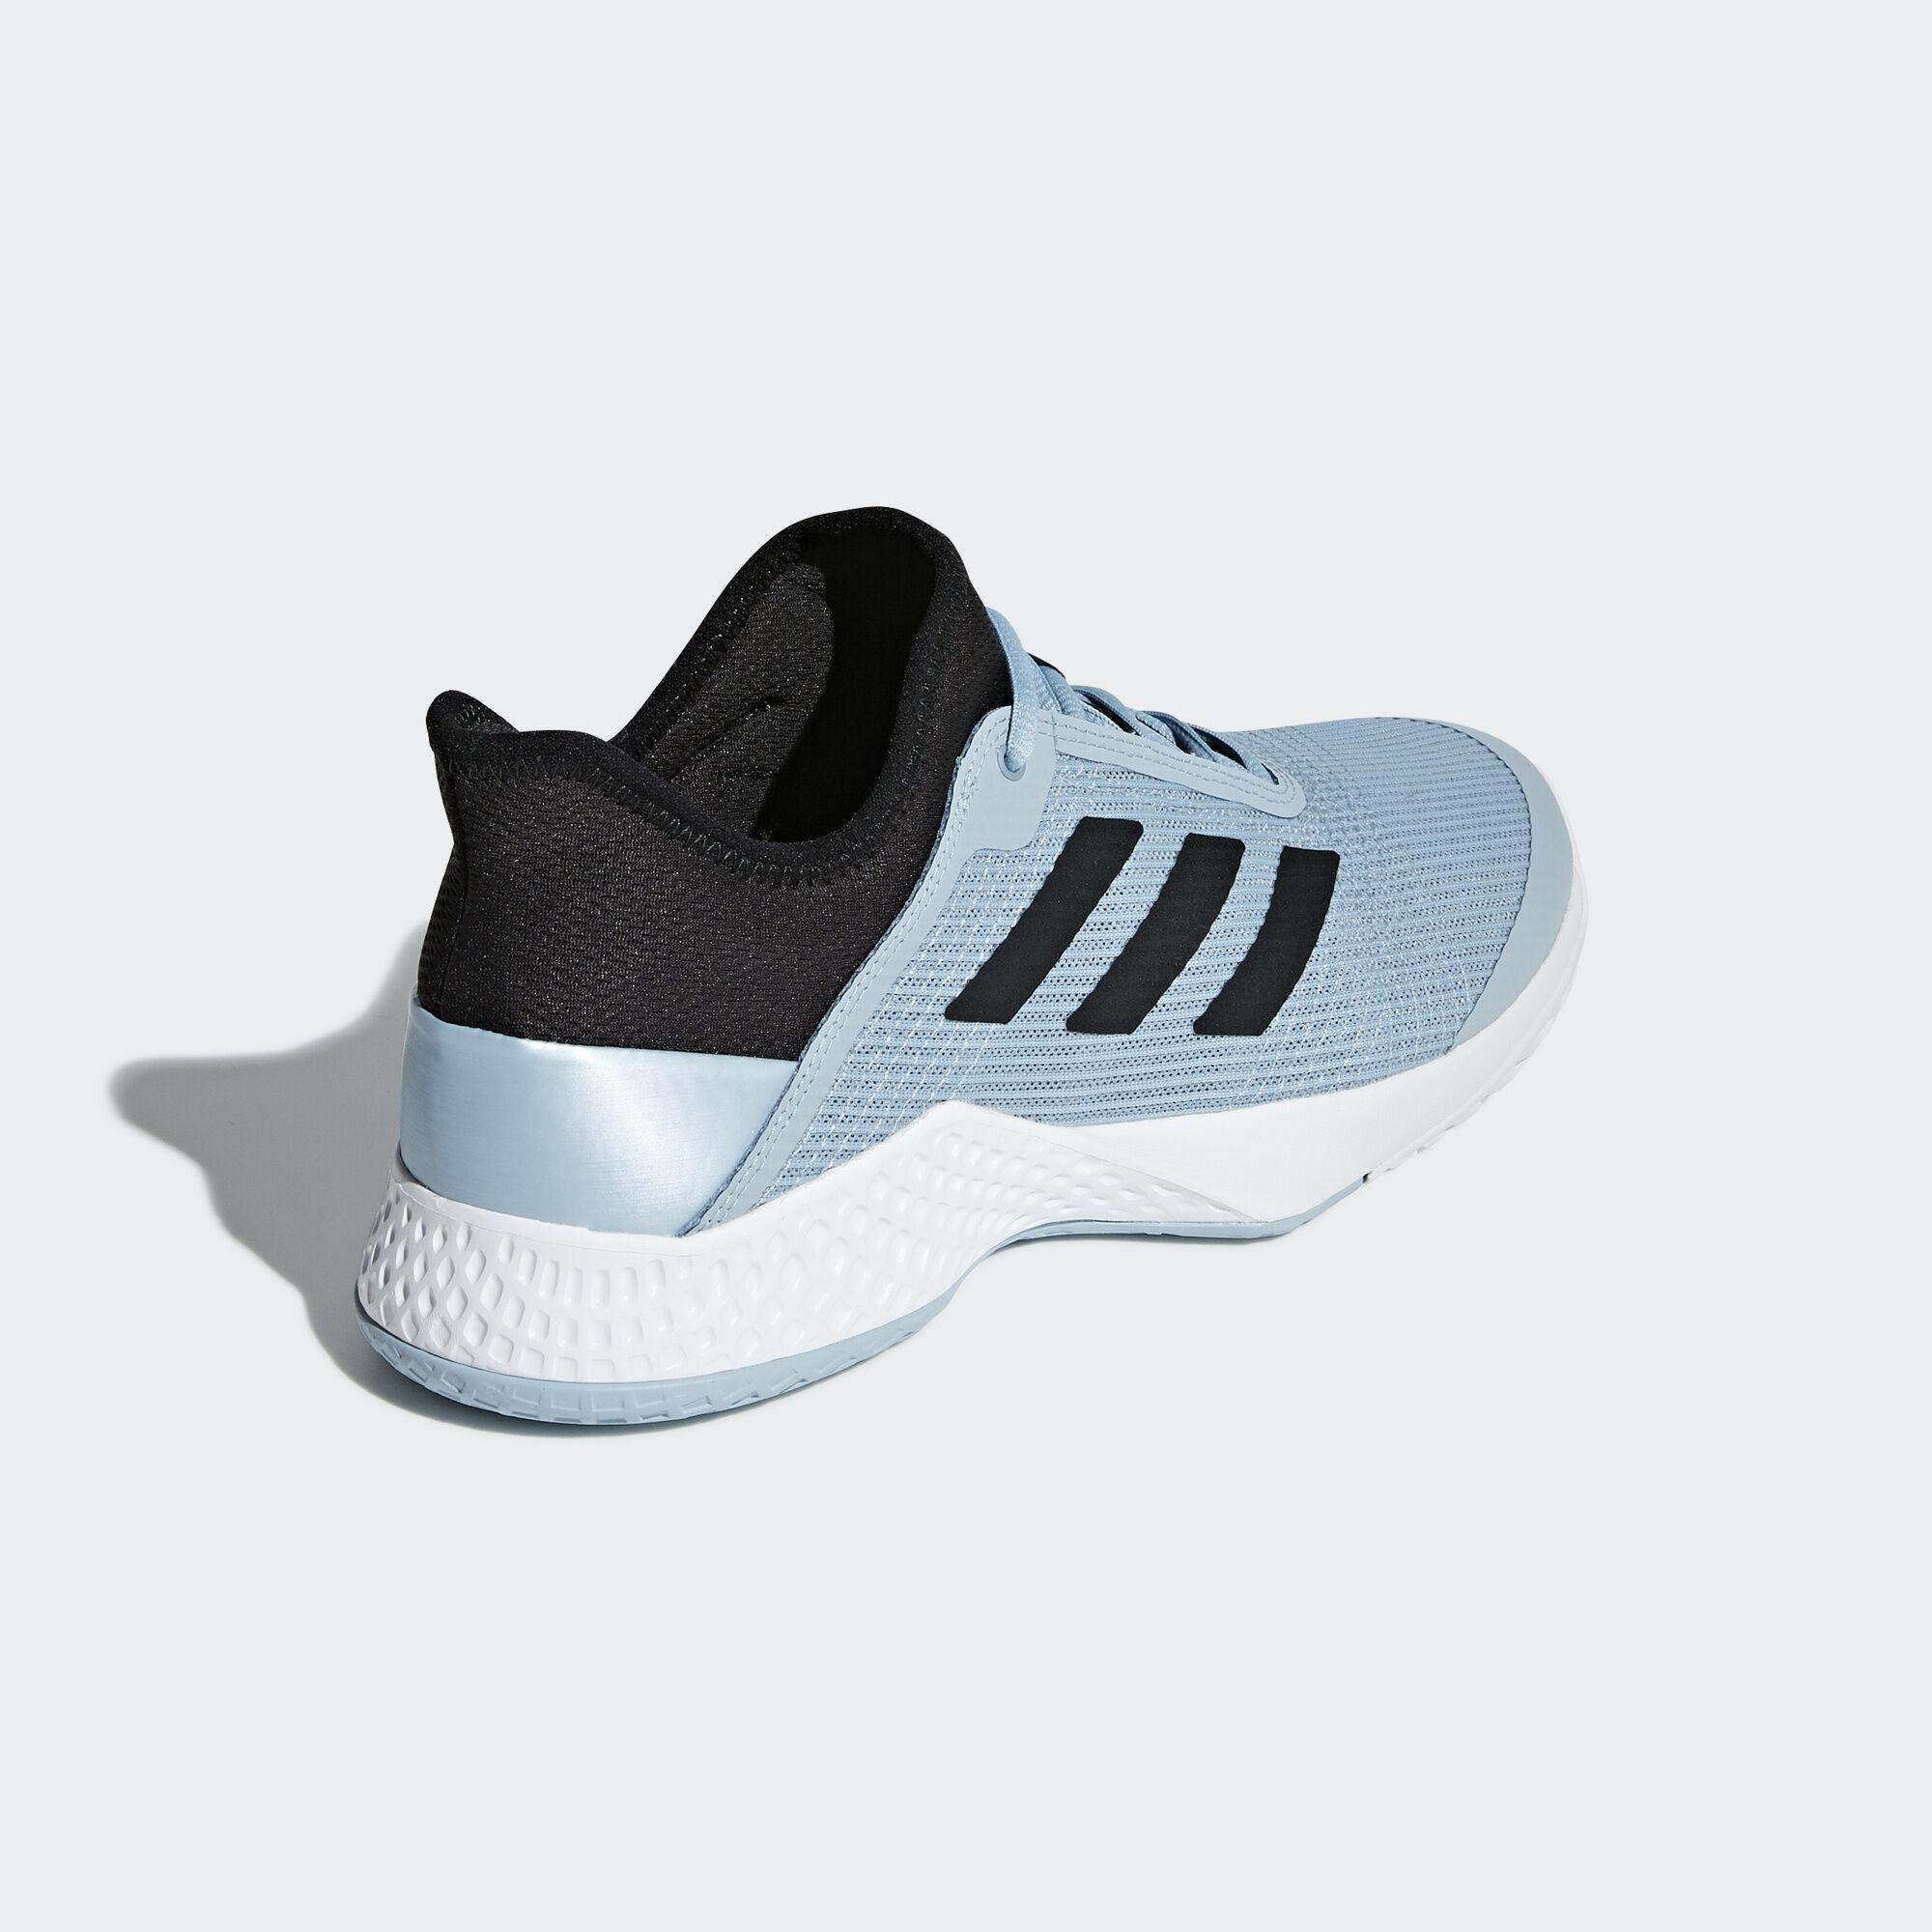  Adidas  Mens Adizero  Club Tennis Shoes  Ash Grey Core 